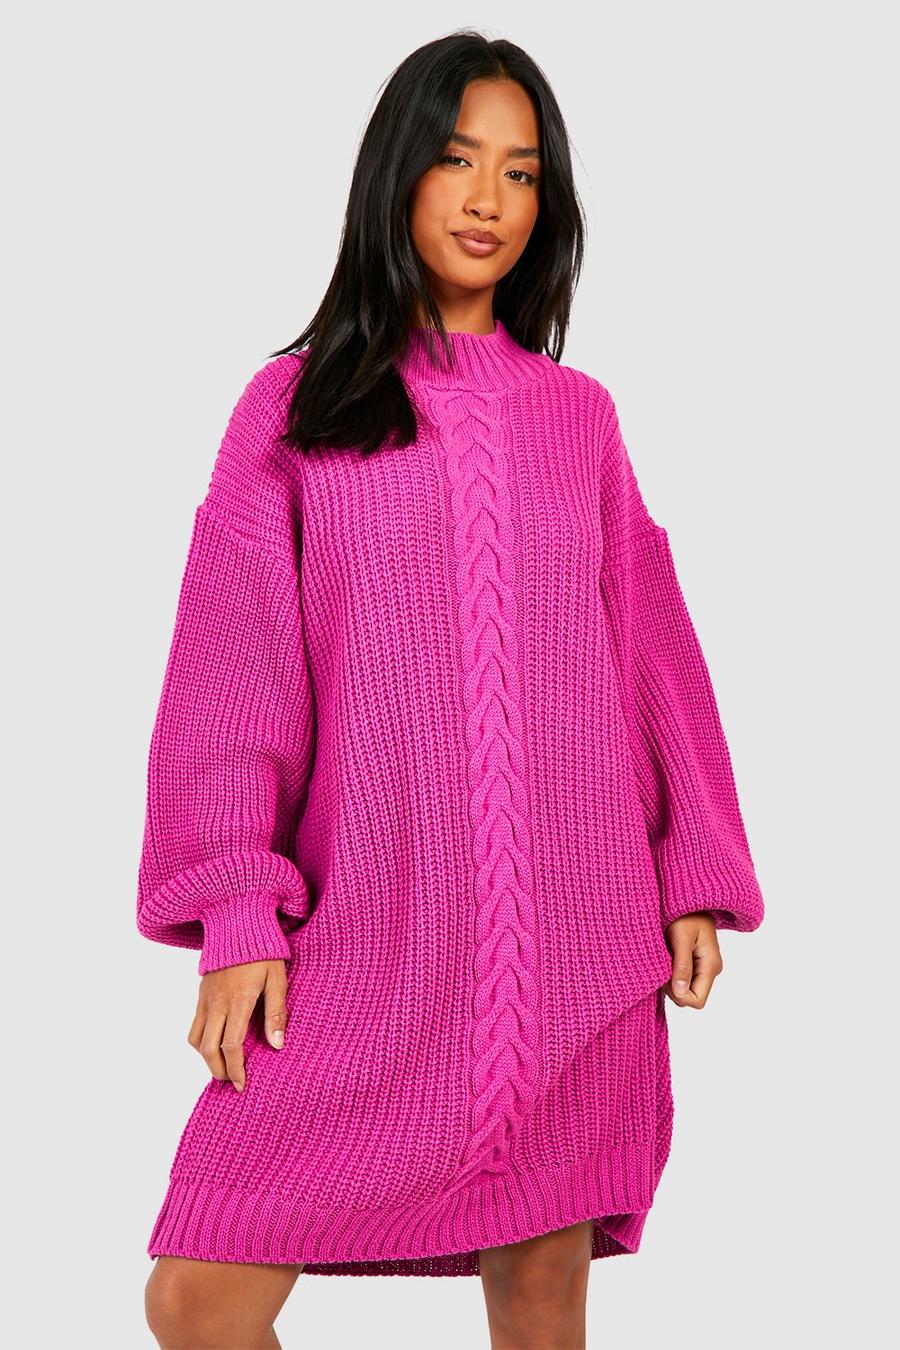 Miniabito Petite in maglia intrecciata, Hot pink